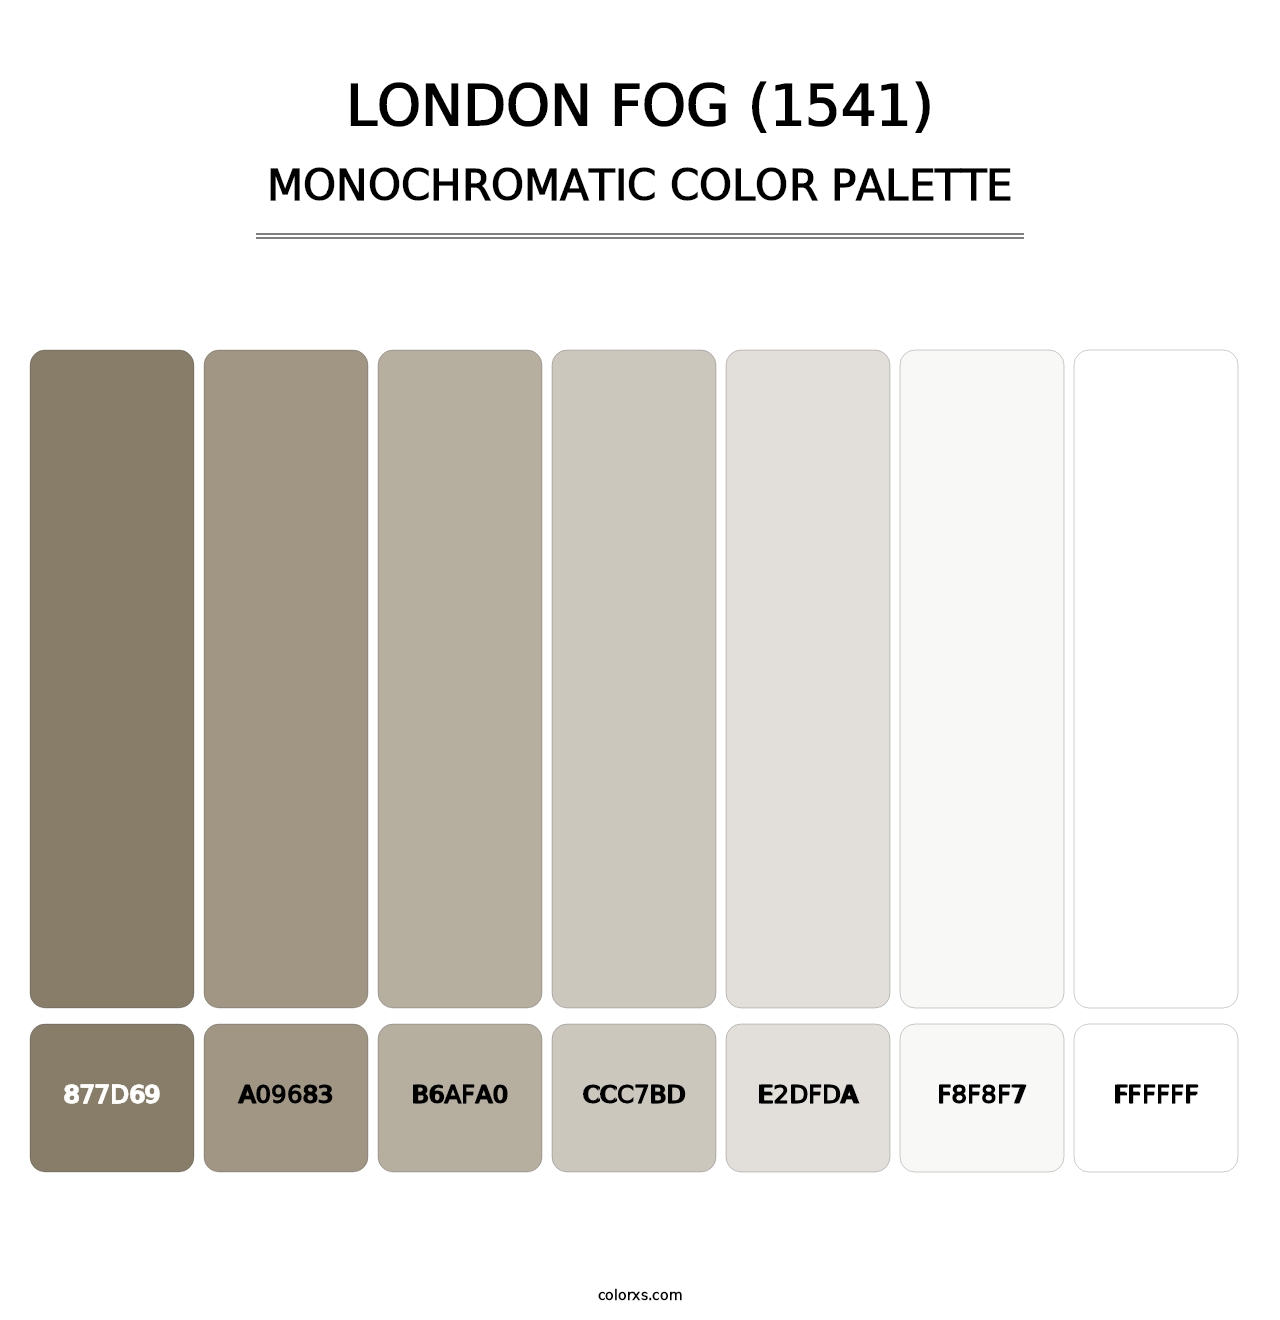 London Fog (1541) - Monochromatic Color Palette